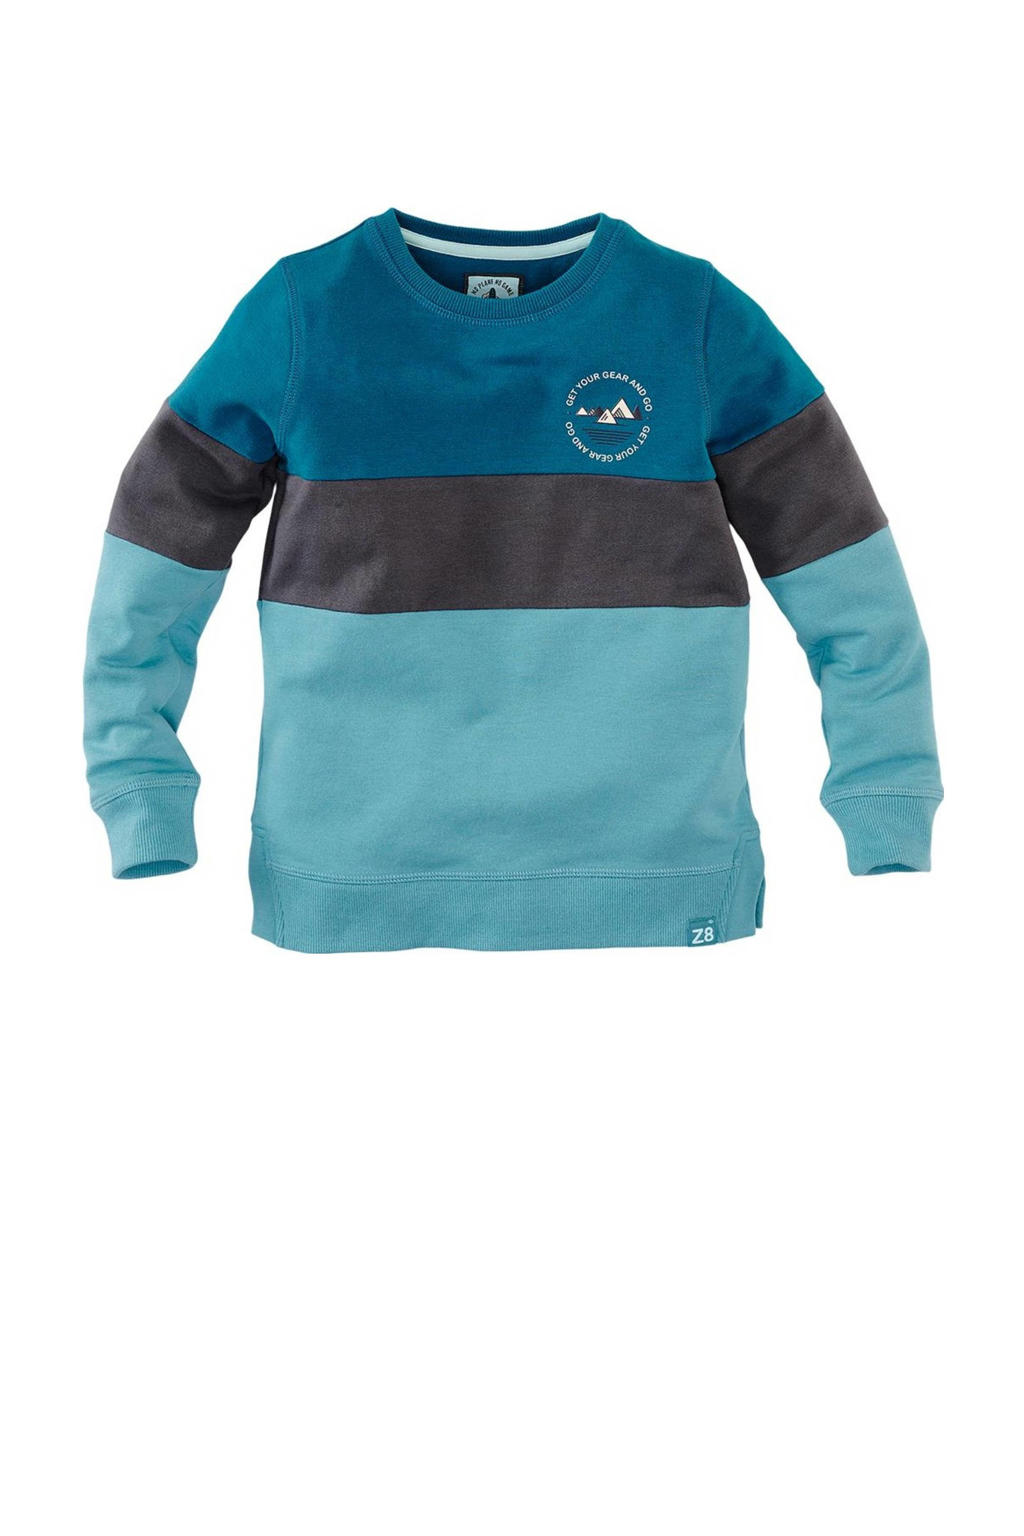 Z8 sweater Pavel petrol/zwart/blauw